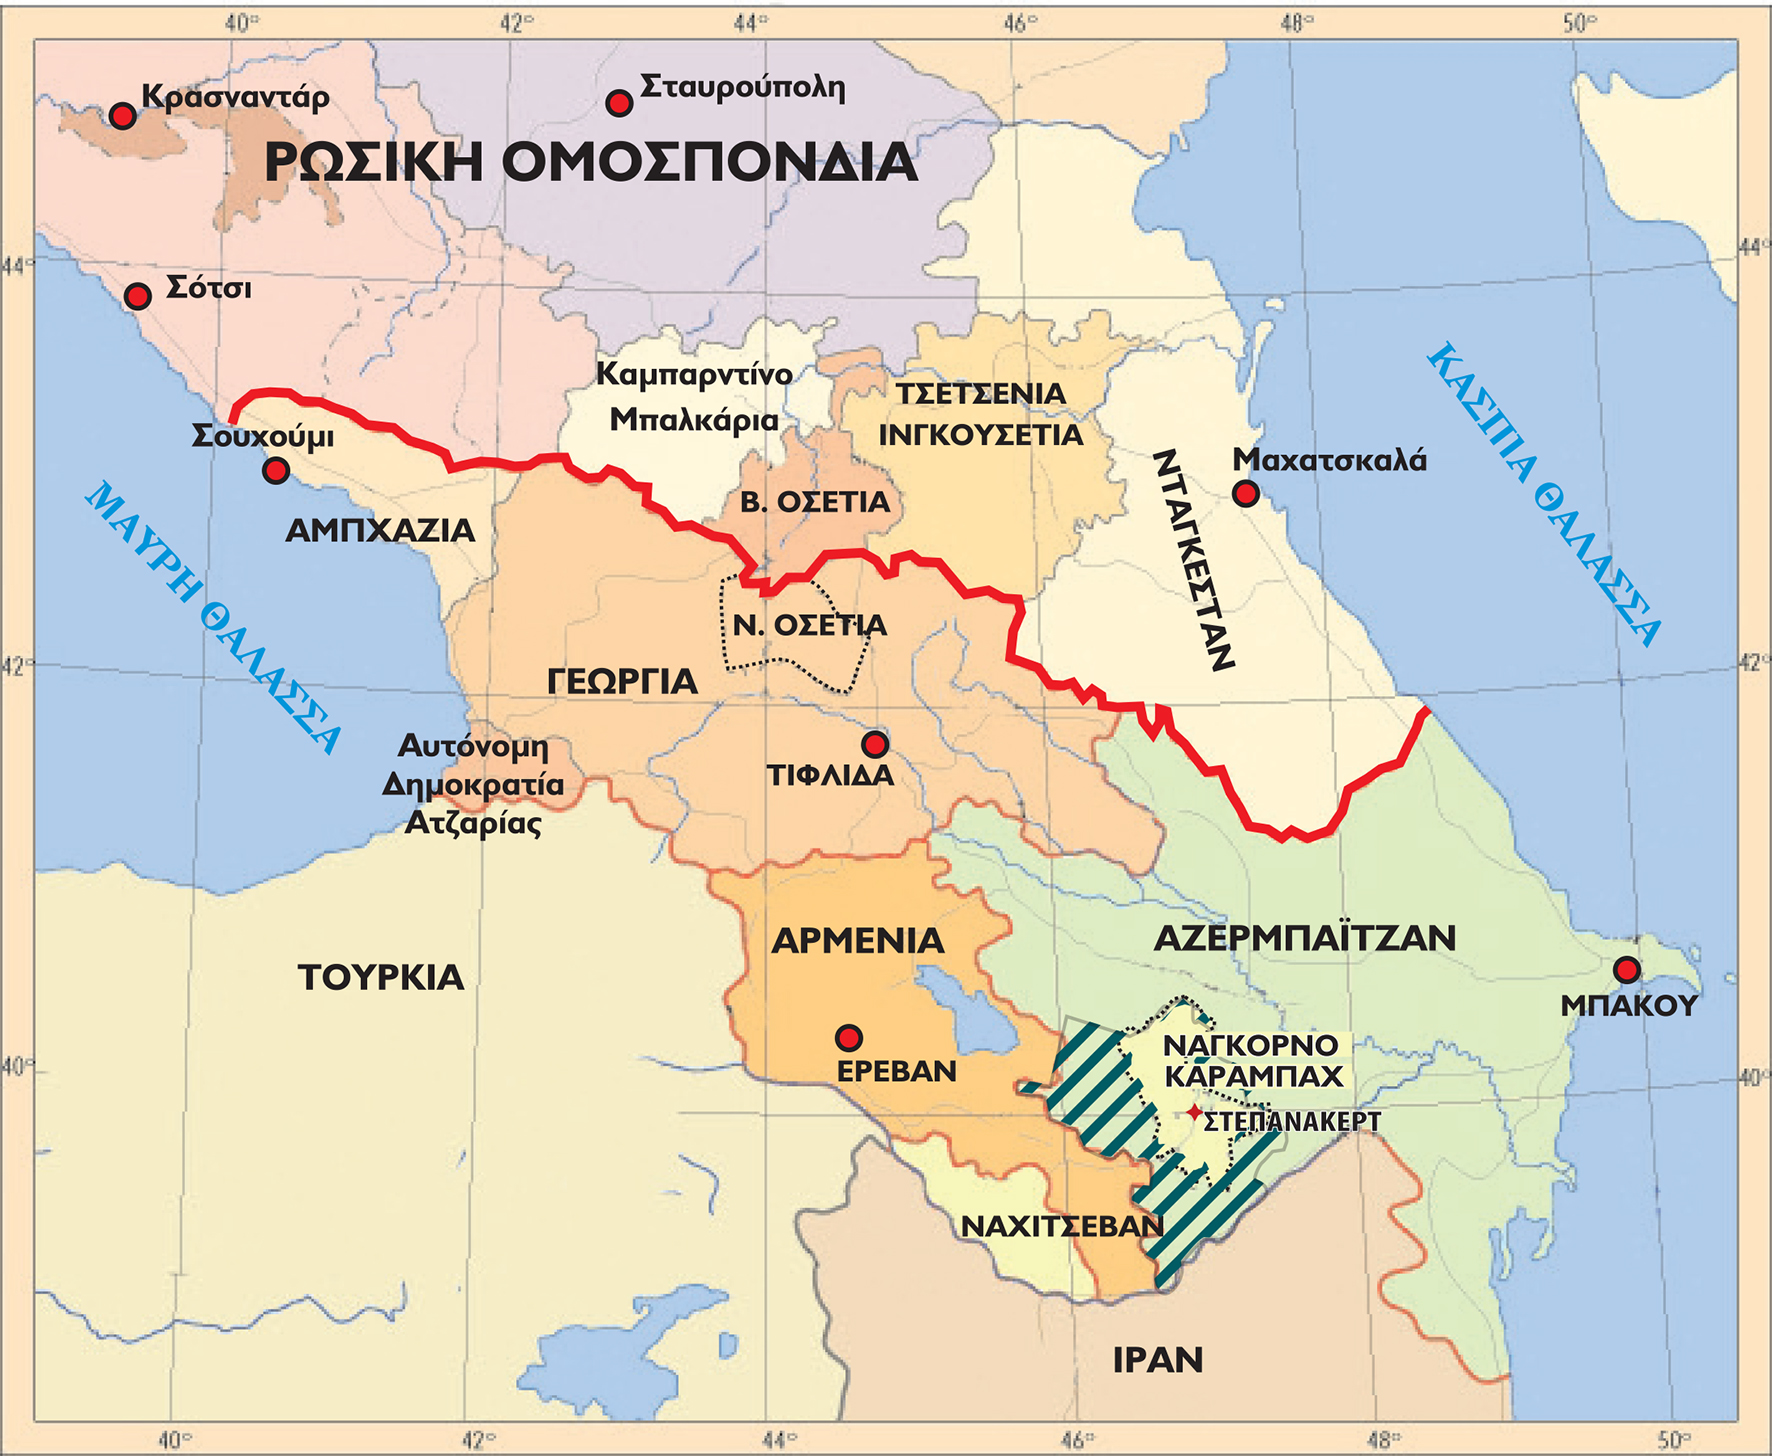 Στο χάρτη αποτυπώνεται όλο το «μωσαϊκό» των κρατών και αυτόνομων περιοχών που προέκυψε μετά την ανατροπή και τη διάλυση της ΕΣΣΔ (η διαγραμμισμένη περιοχή είναι εδάφη γύρω από το Ναγκόρνο Καραμπάχ που έχουν καταληφθεί από την Αρμενία). Στο κάτω μέρος της Αρμενίας το Ναχτσιβάν ανήκει στο Αζερμπαϊτζάν